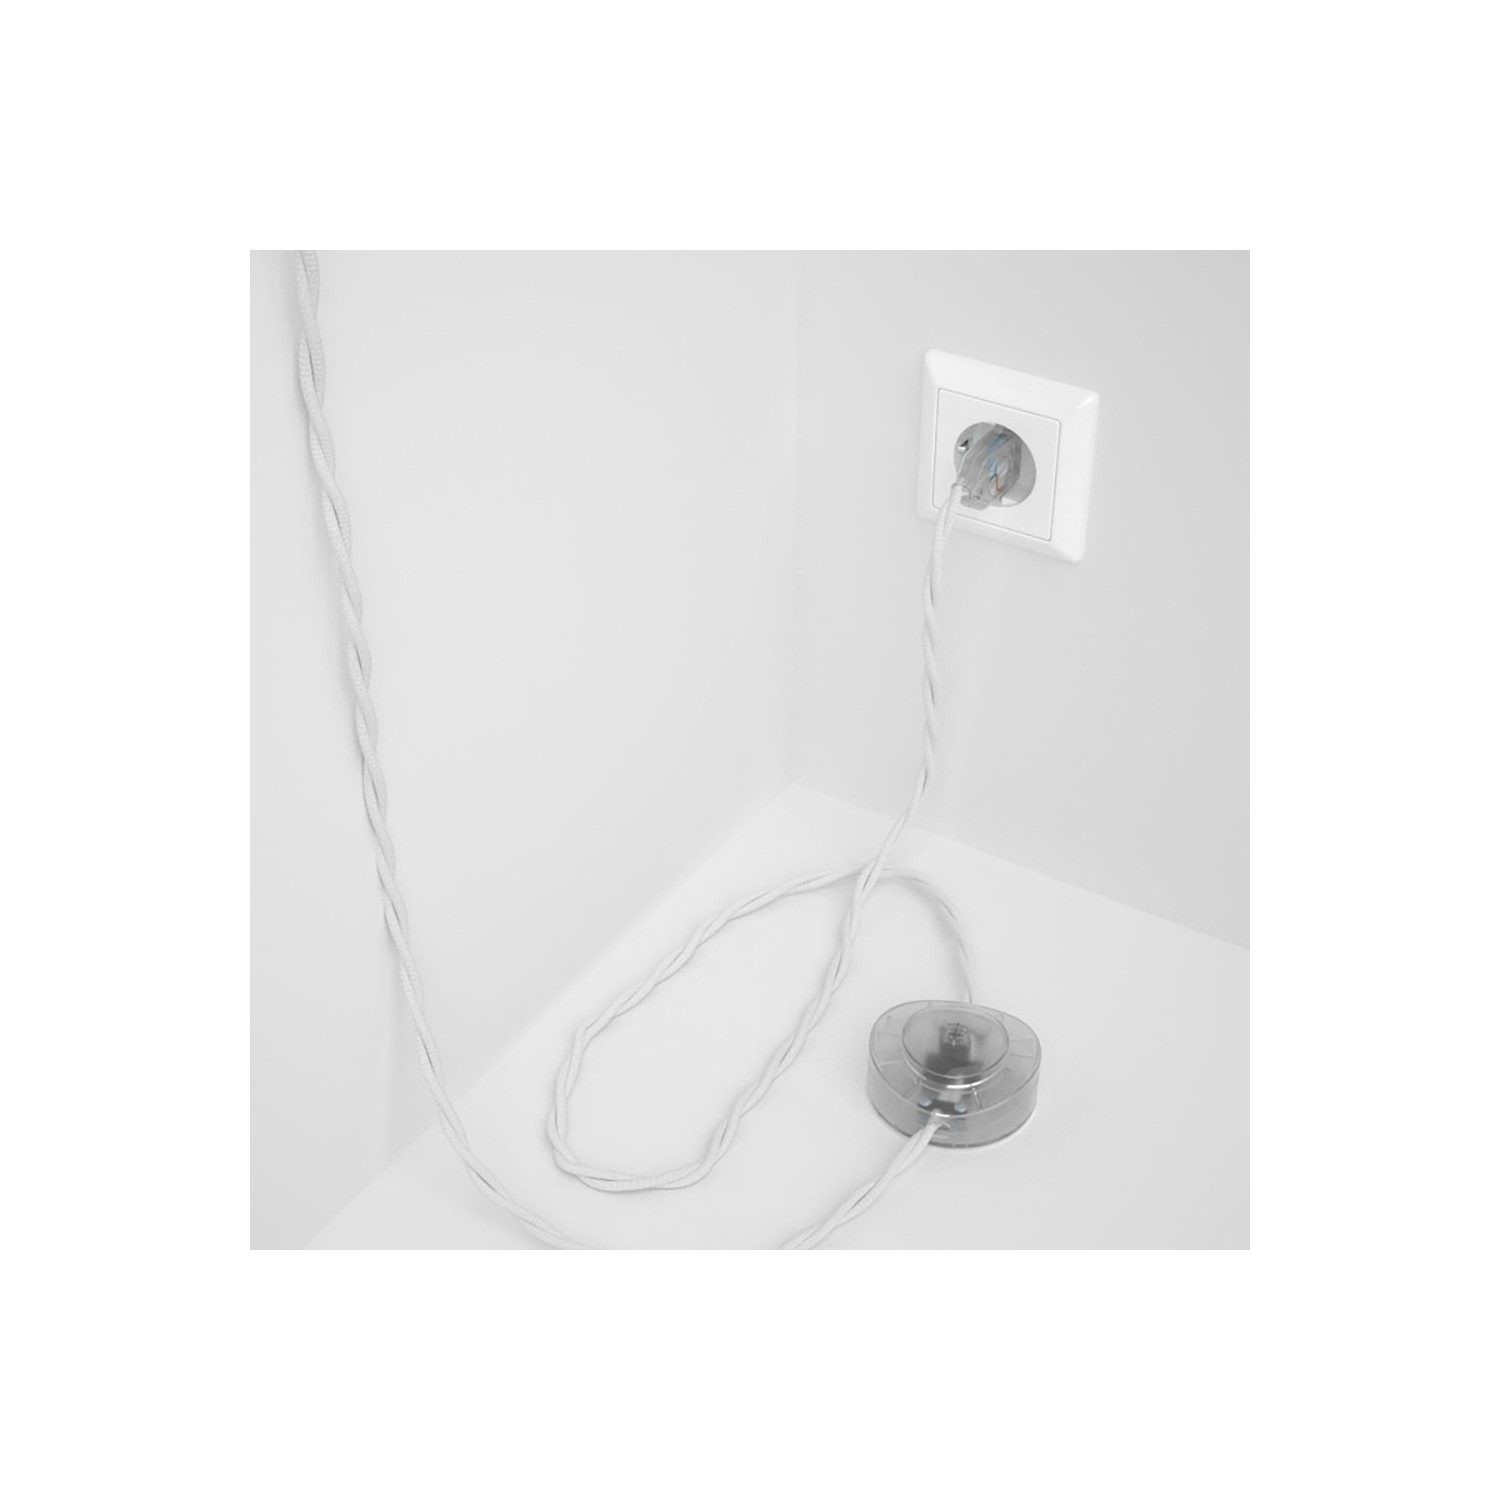 Strijkijzersnoer set TM01 wit viscose 3 m. voor staande lamp met stekker en voetschakelaar.